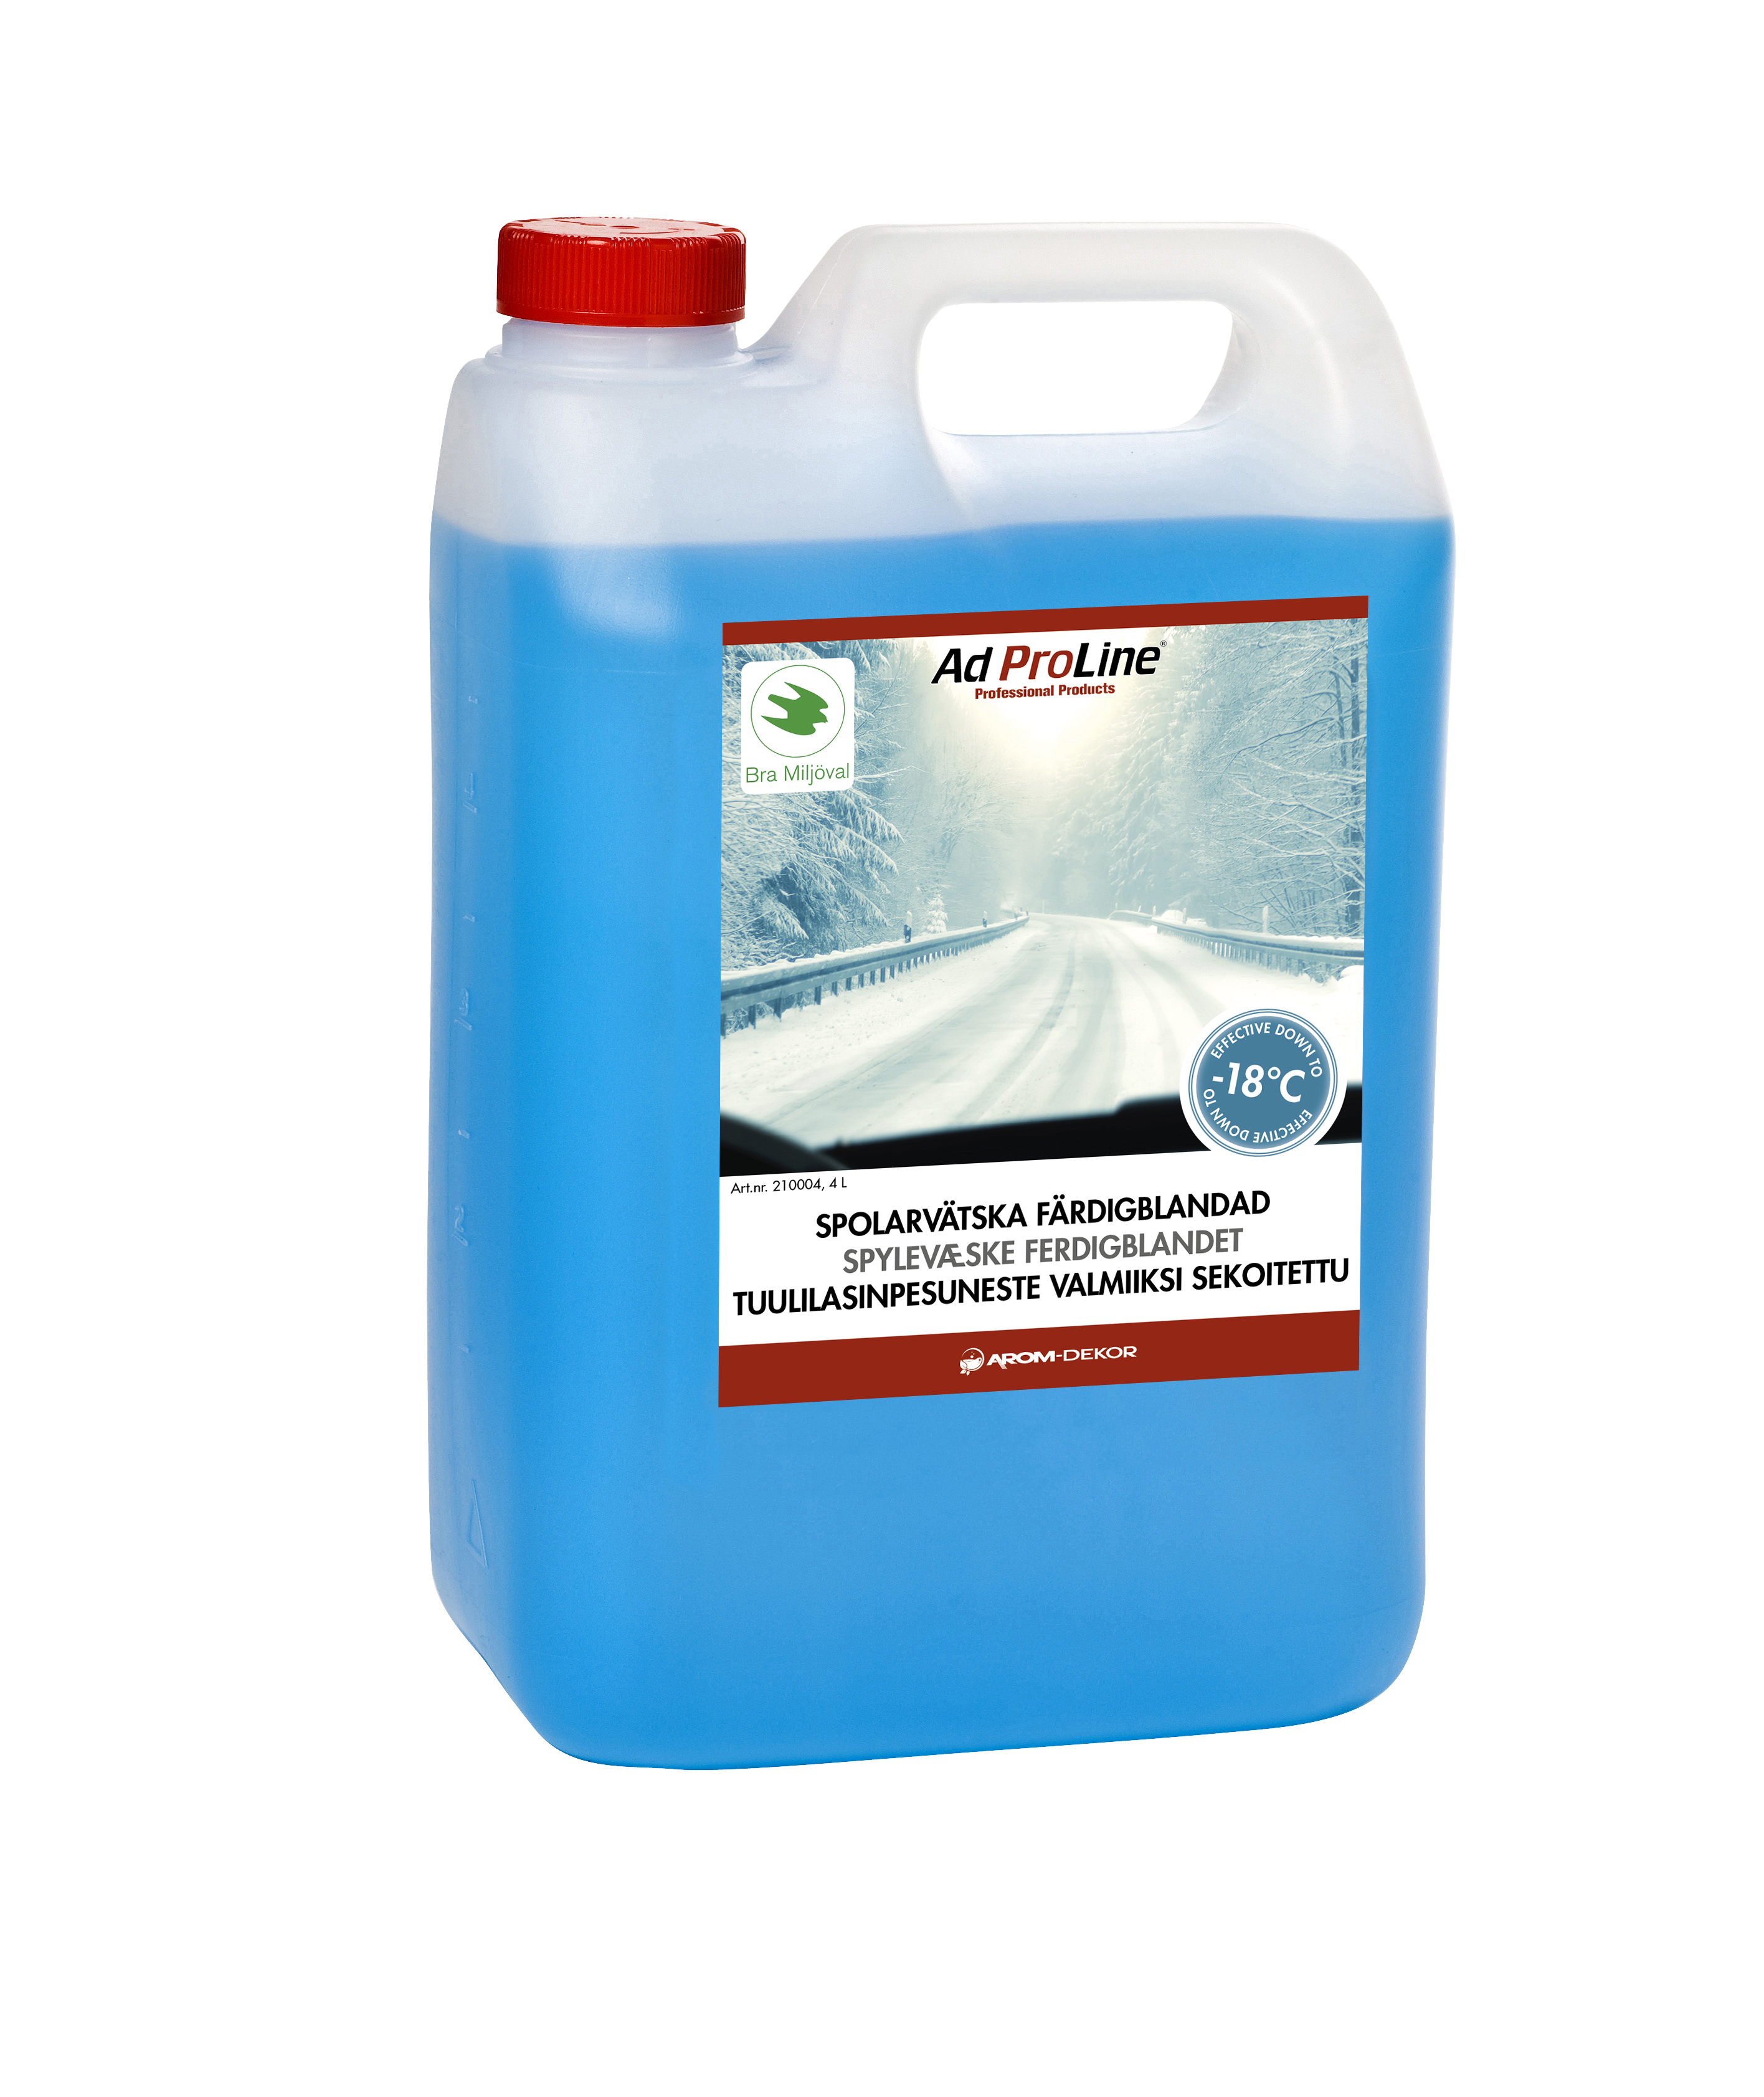 AdProLine® Spolarvätska Färdigblandad -18°C,  4 liter dunk (6-pack)-image